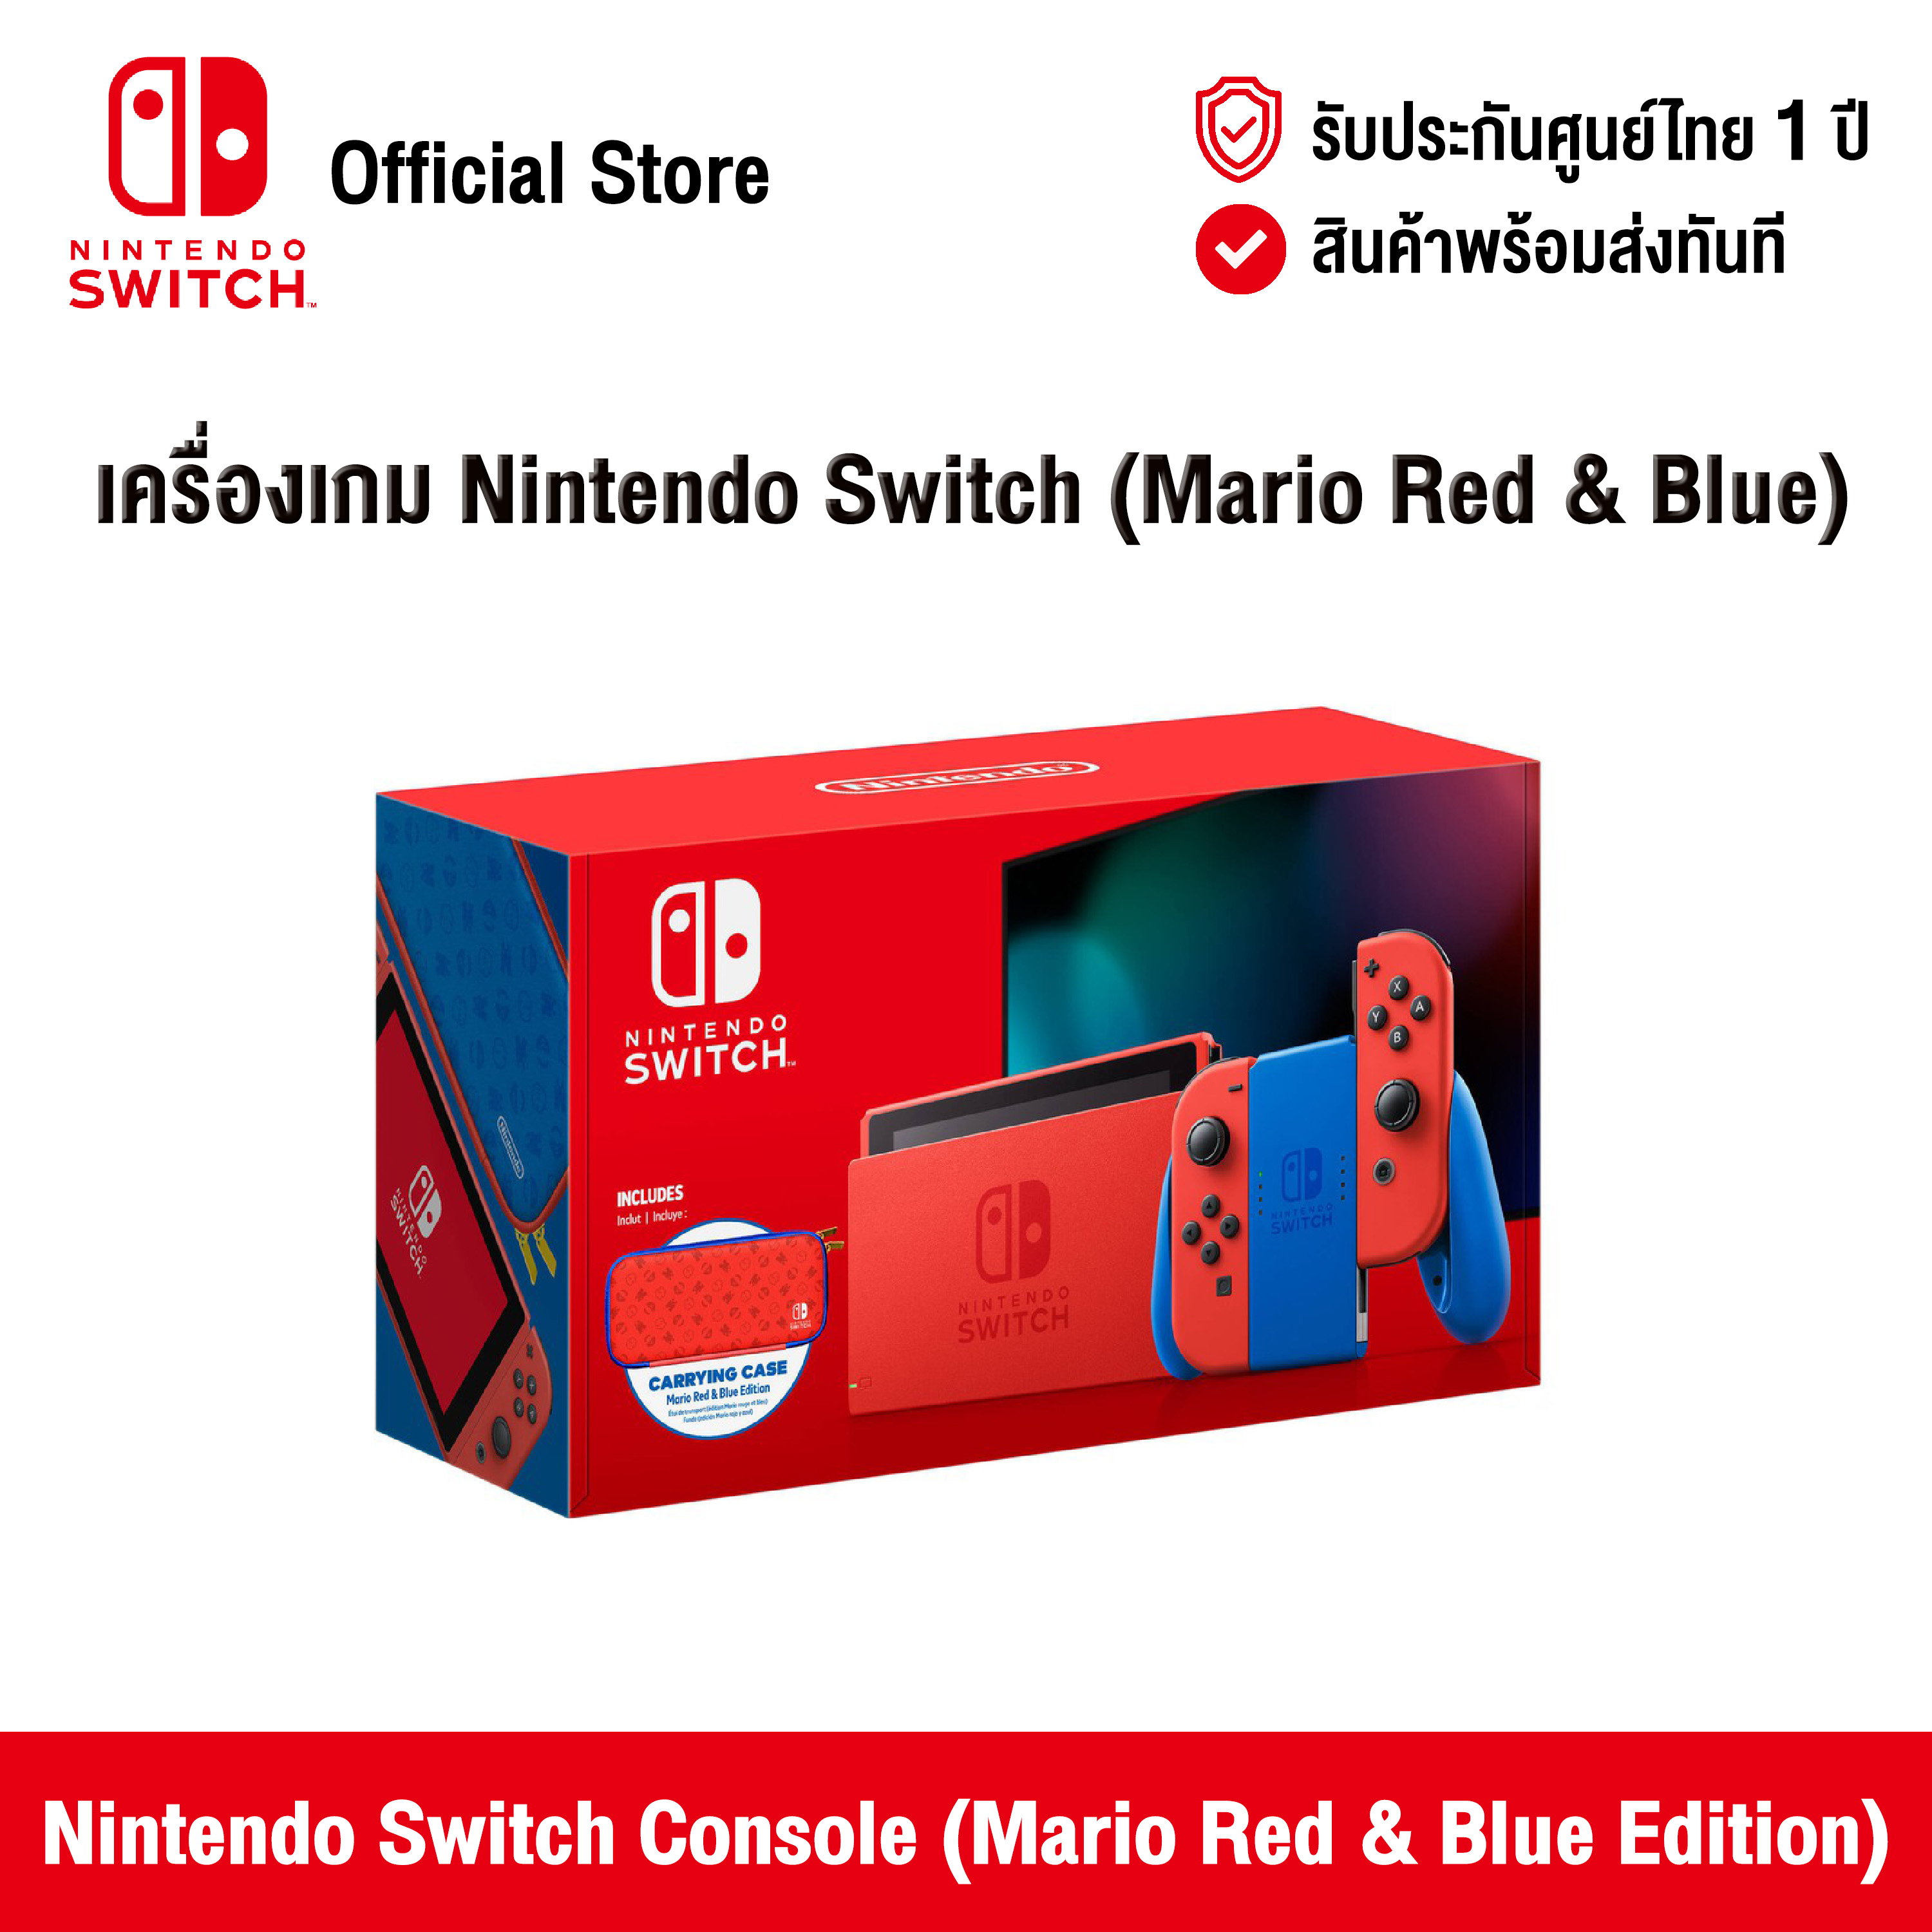 [ศูนย์ไทย] Nintendo Switch : Nintendo Switch Console (Mario Red & Blue Edition) เครื่องเกมคอนโซล สี Mario Red & Blue Edition